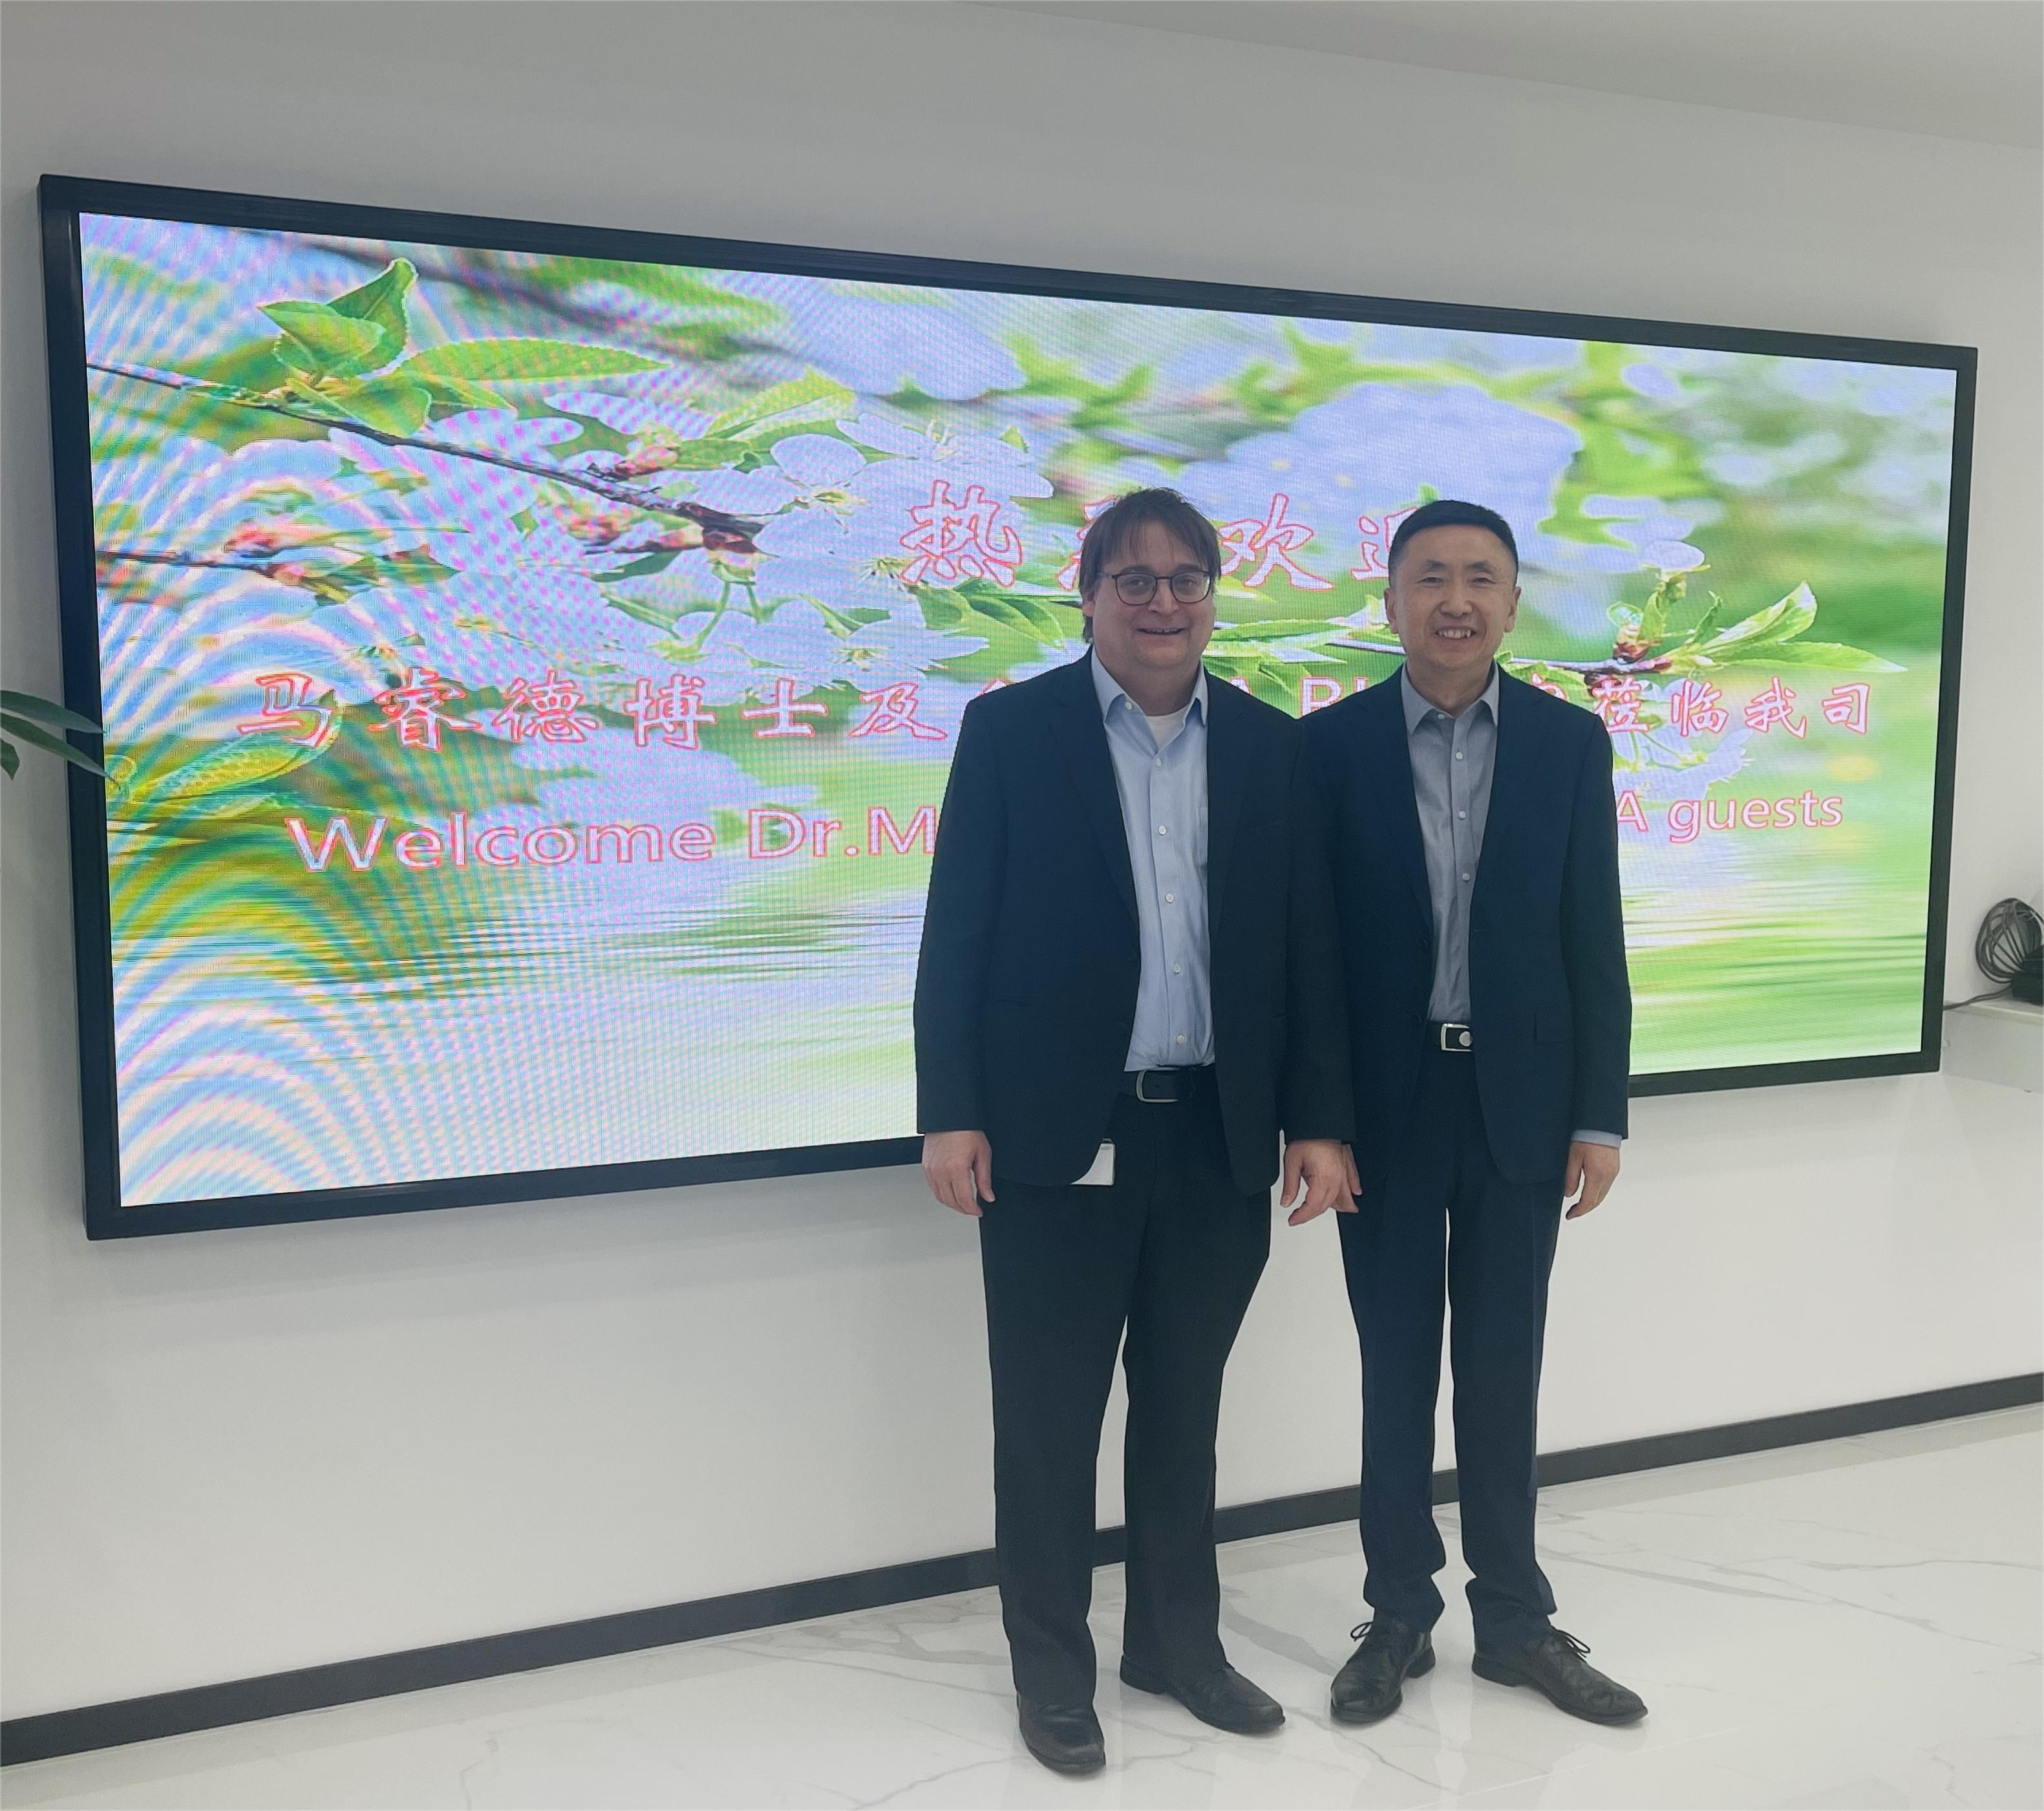 西门子数字化工业集团过程自动化事业部总经理马睿德博士一行到访北京进步公司